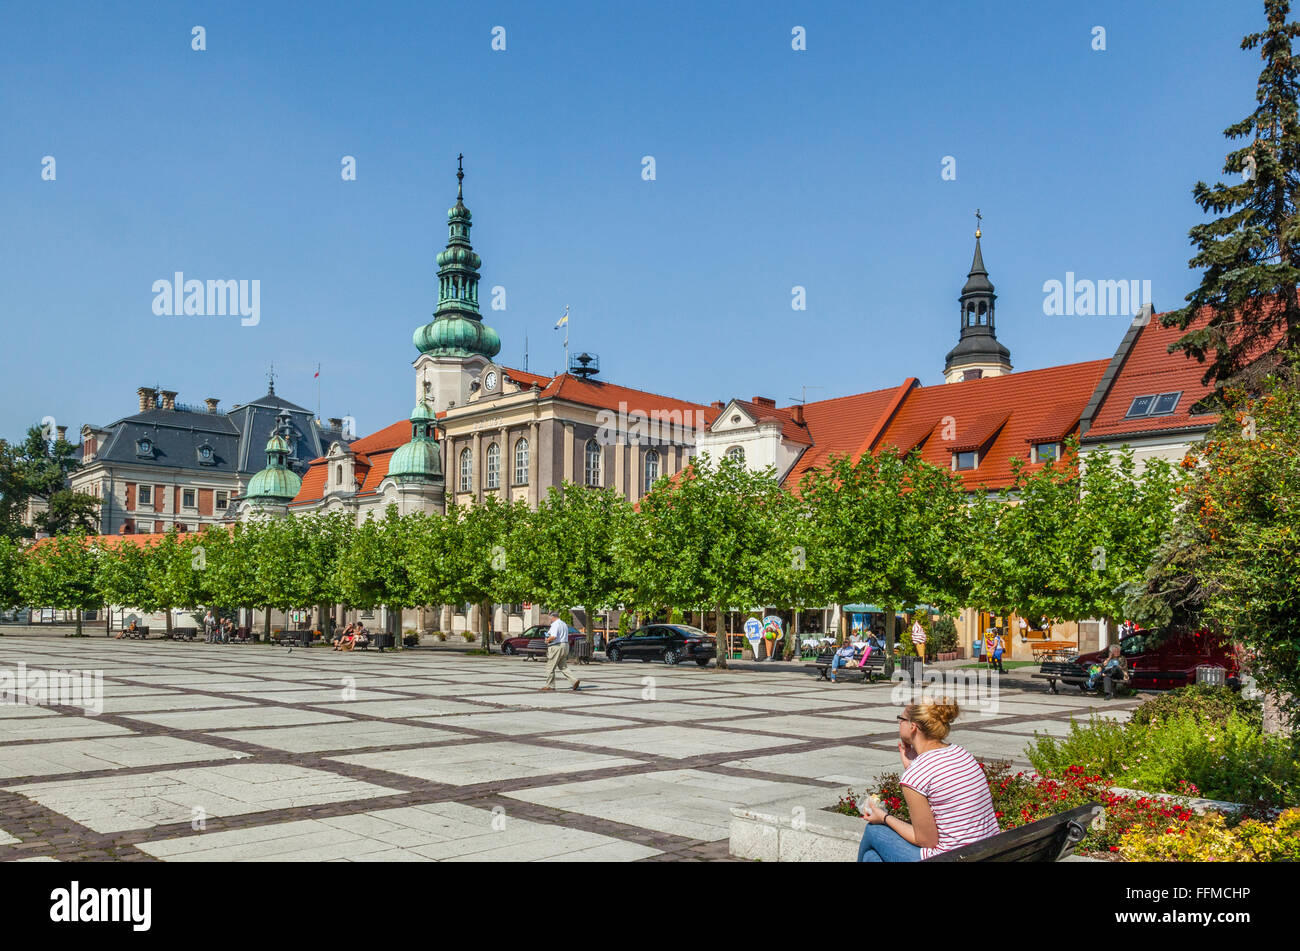 Polonia, Silesia, Pszczyna (Pless voivodía), vista de Rynek, la Plaza del Mercado con su ayuntamiento y la iglesia protestante Foto de stock